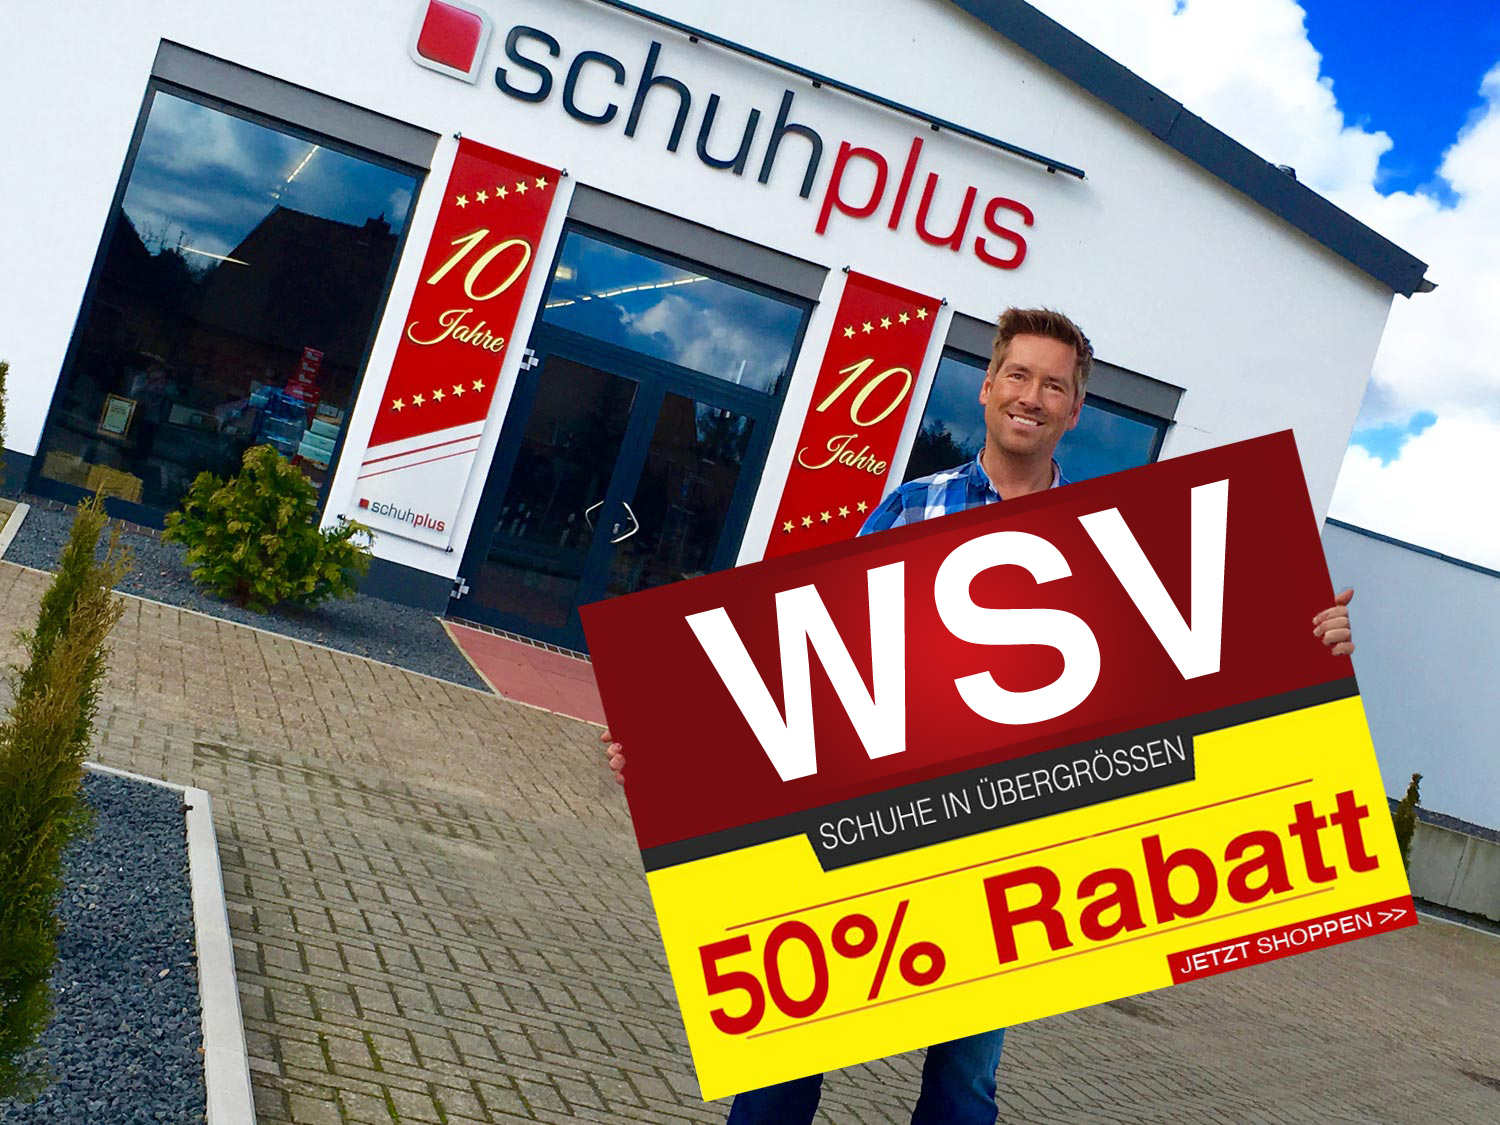 WSV 2018 bei schuhplus: 50% Rabatt auf alle großen Schuhe